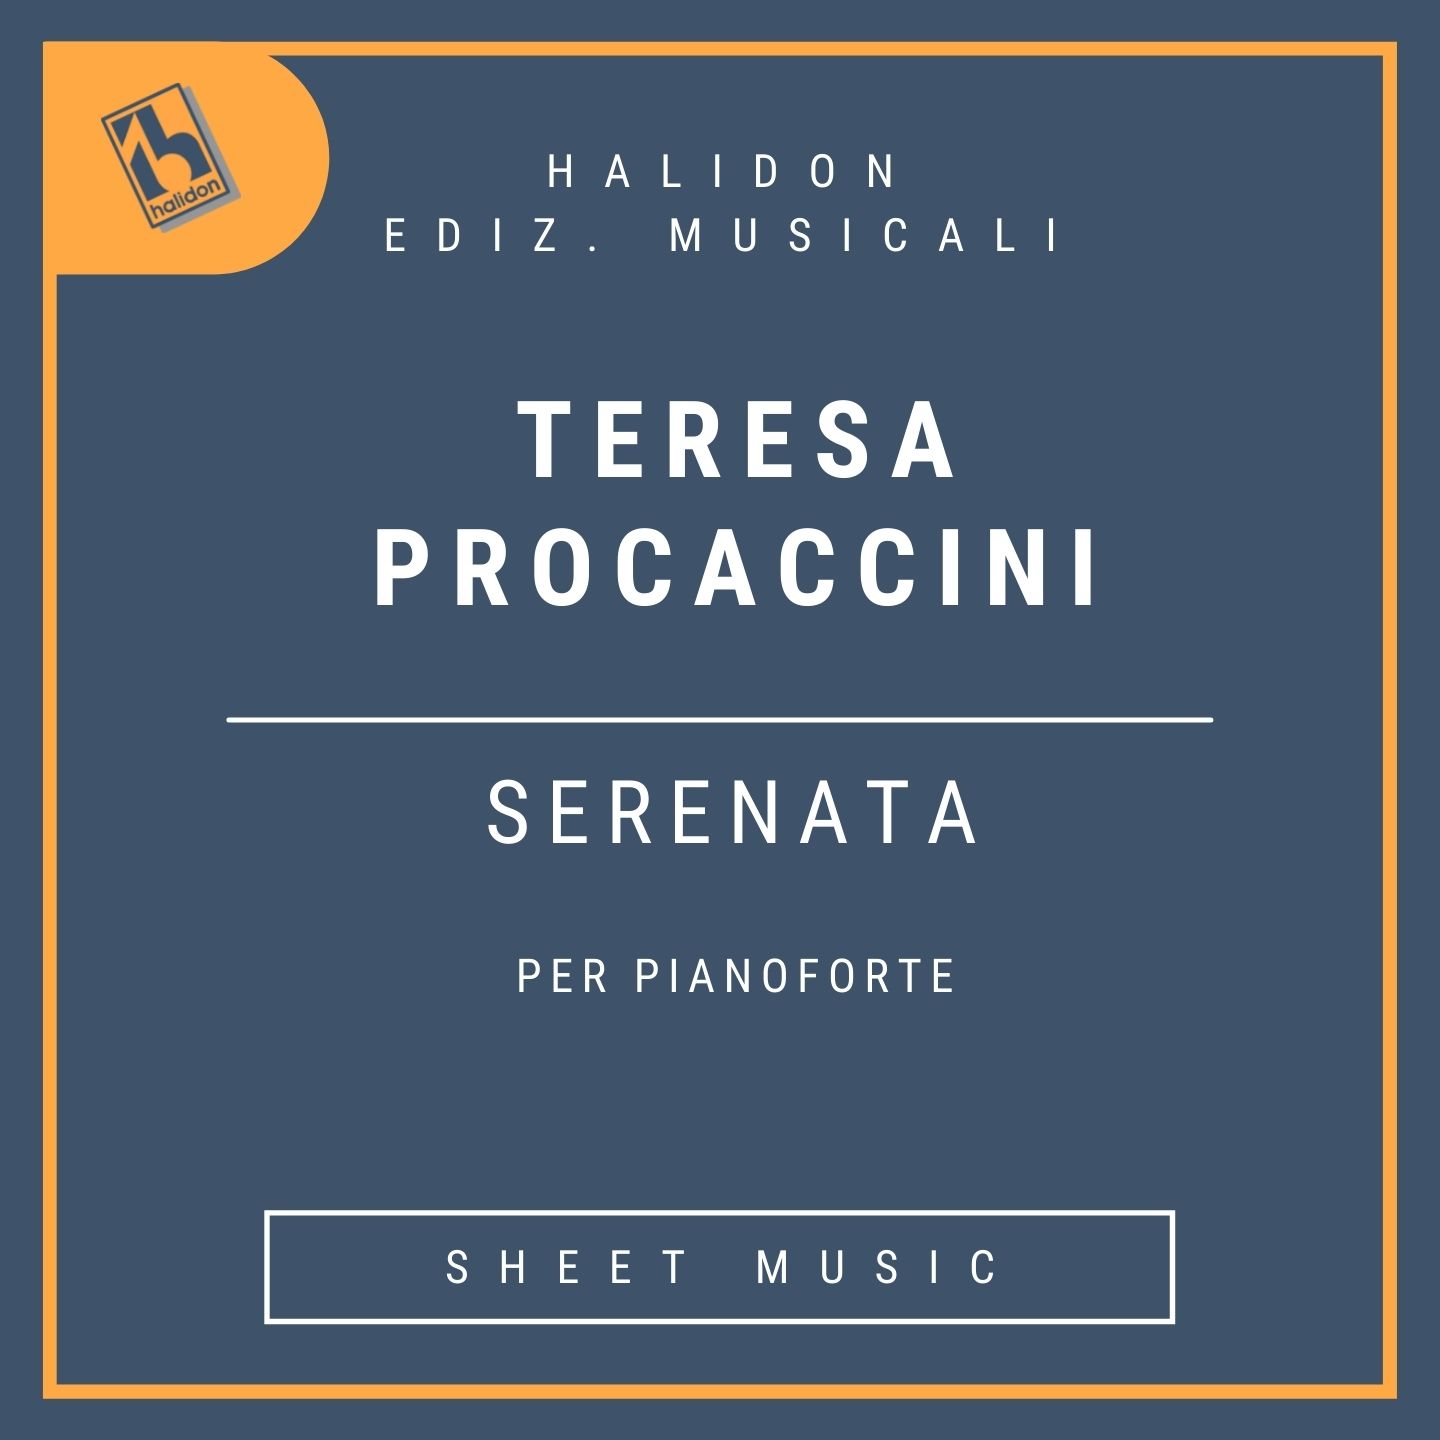 Teresa Procaccini - Serenata